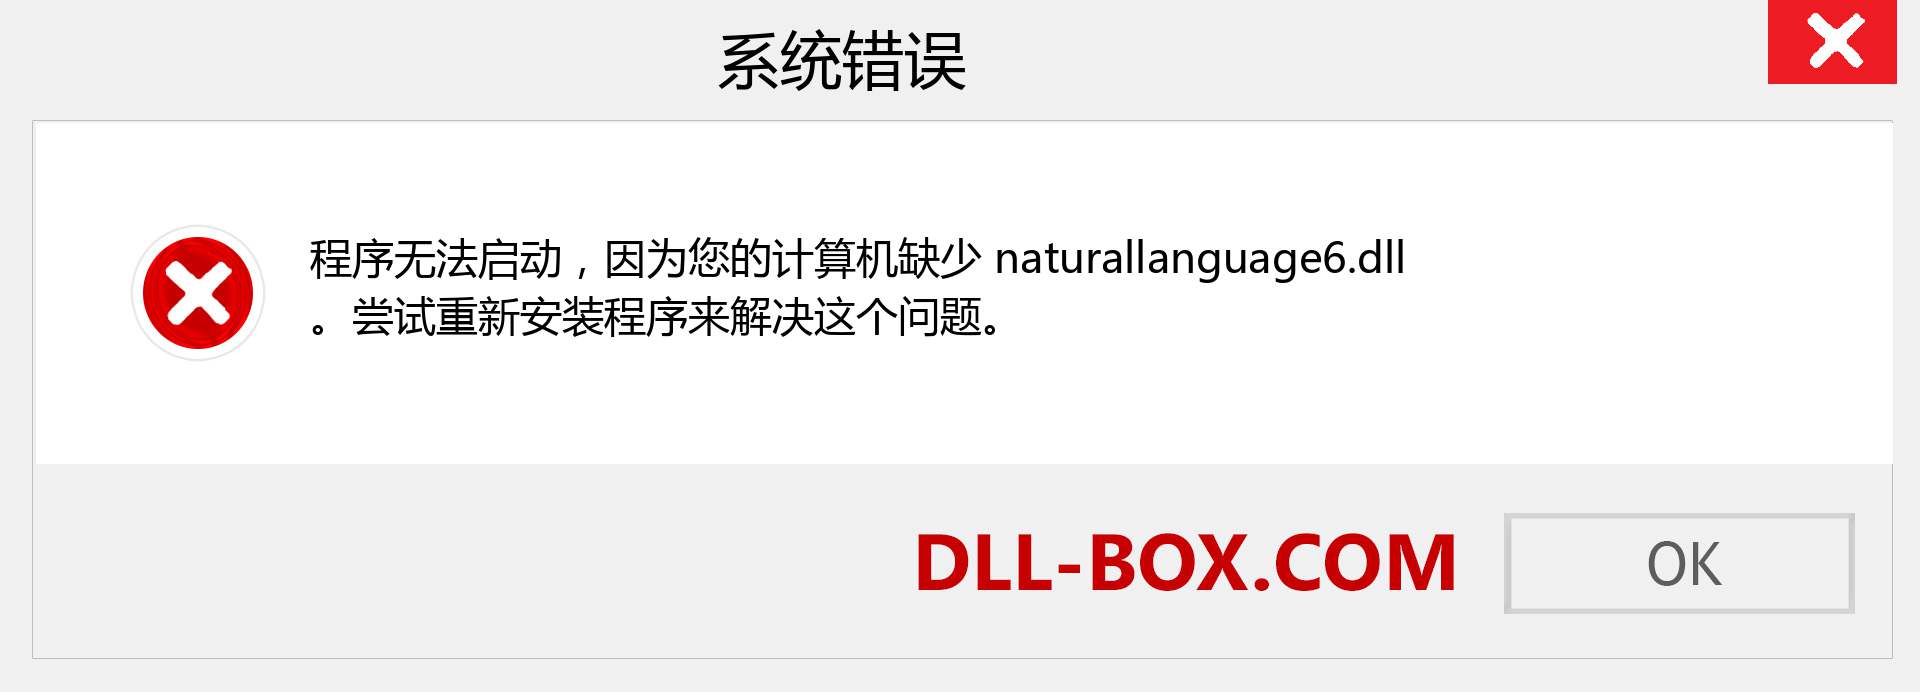 naturallanguage6.dll 文件丢失？。 适用于 Windows 7、8、10 的下载 - 修复 Windows、照片、图像上的 naturallanguage6 dll 丢失错误